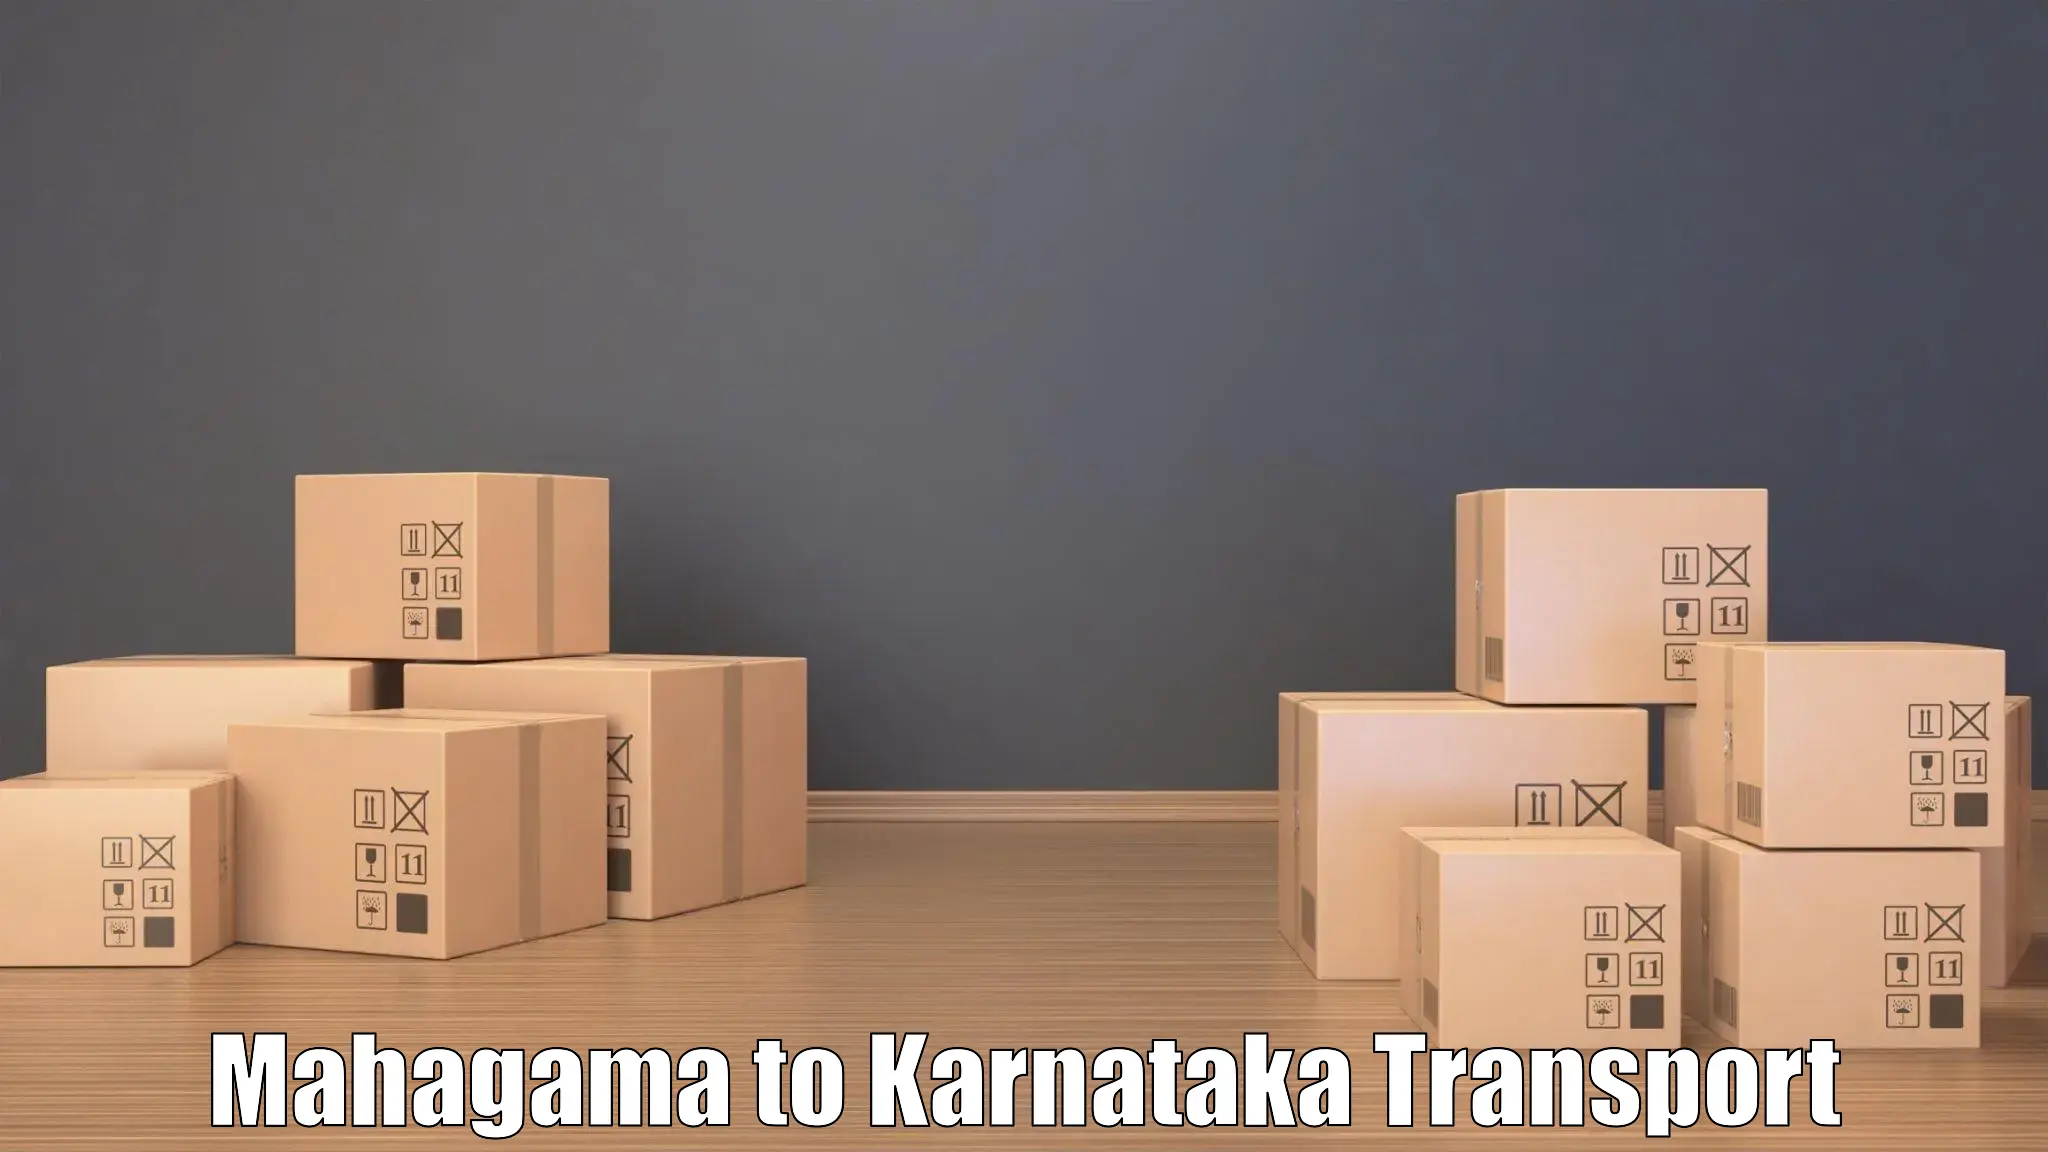 International cargo transportation services in Mahagama to Kotturu